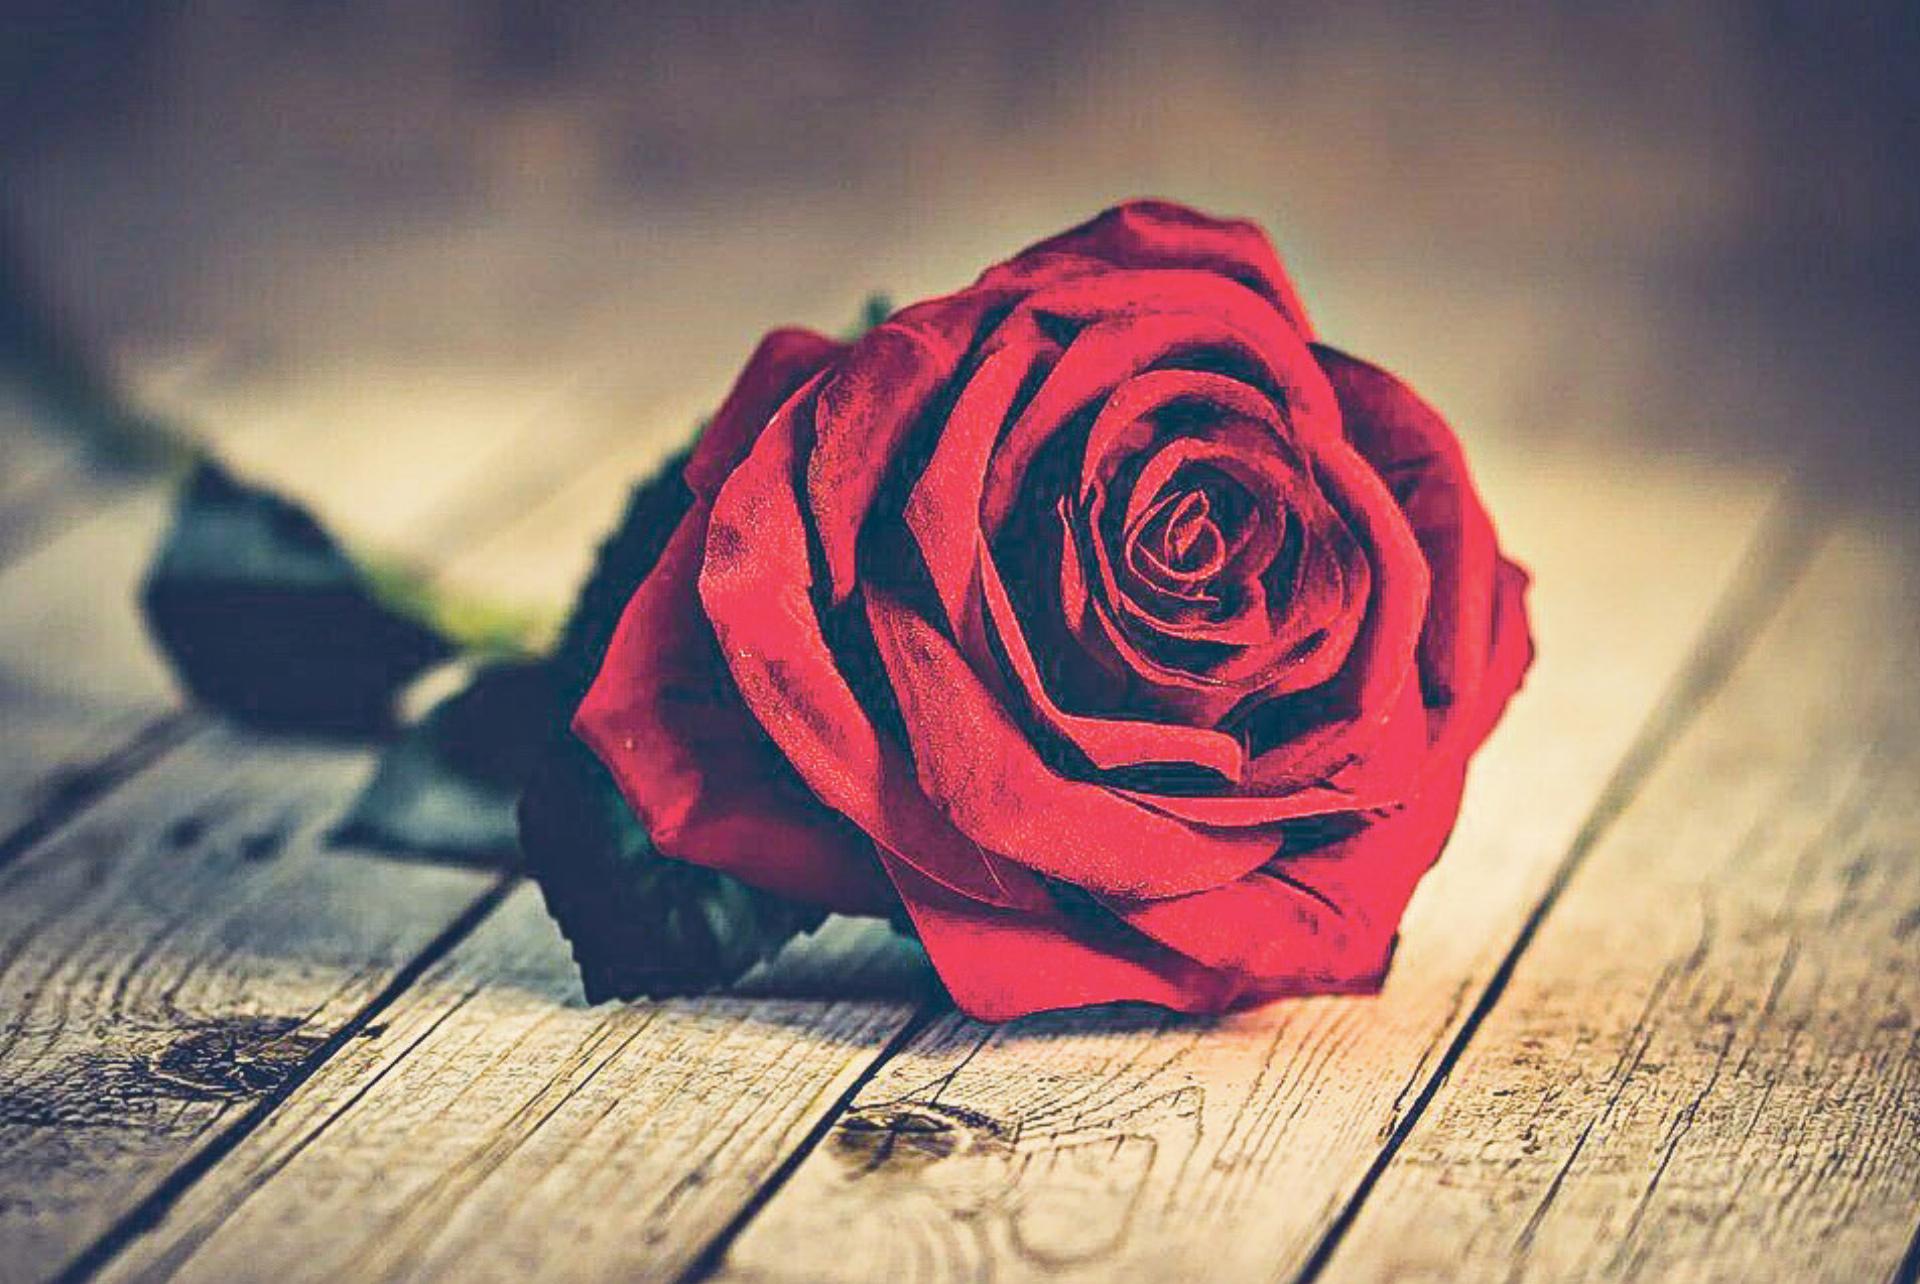 Valentinstag bedeutet nicht nur, seinen Liebsten rote Rosen zu schenken. Die Liebe spielt auch in der Kirche eine zentrale Rolle. Bild zvg